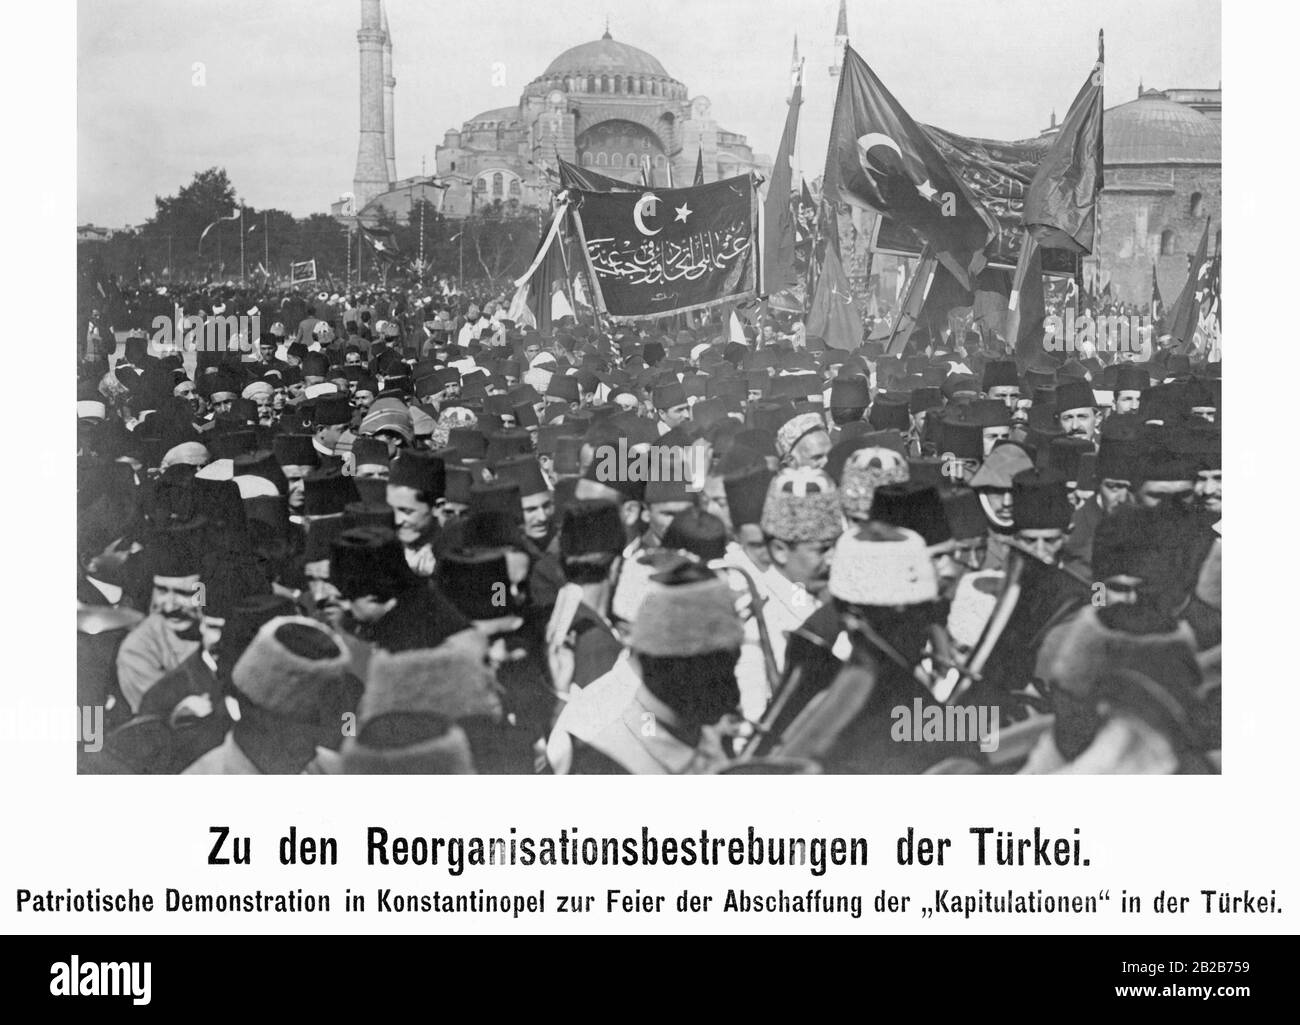 Patriotische Demonstration vor der Hagia Sophia zur Feier der Abschaffung der sogenannten "Kapitulationen", also der Privilegien von Ausländern im Osmanenreich. Stockfoto